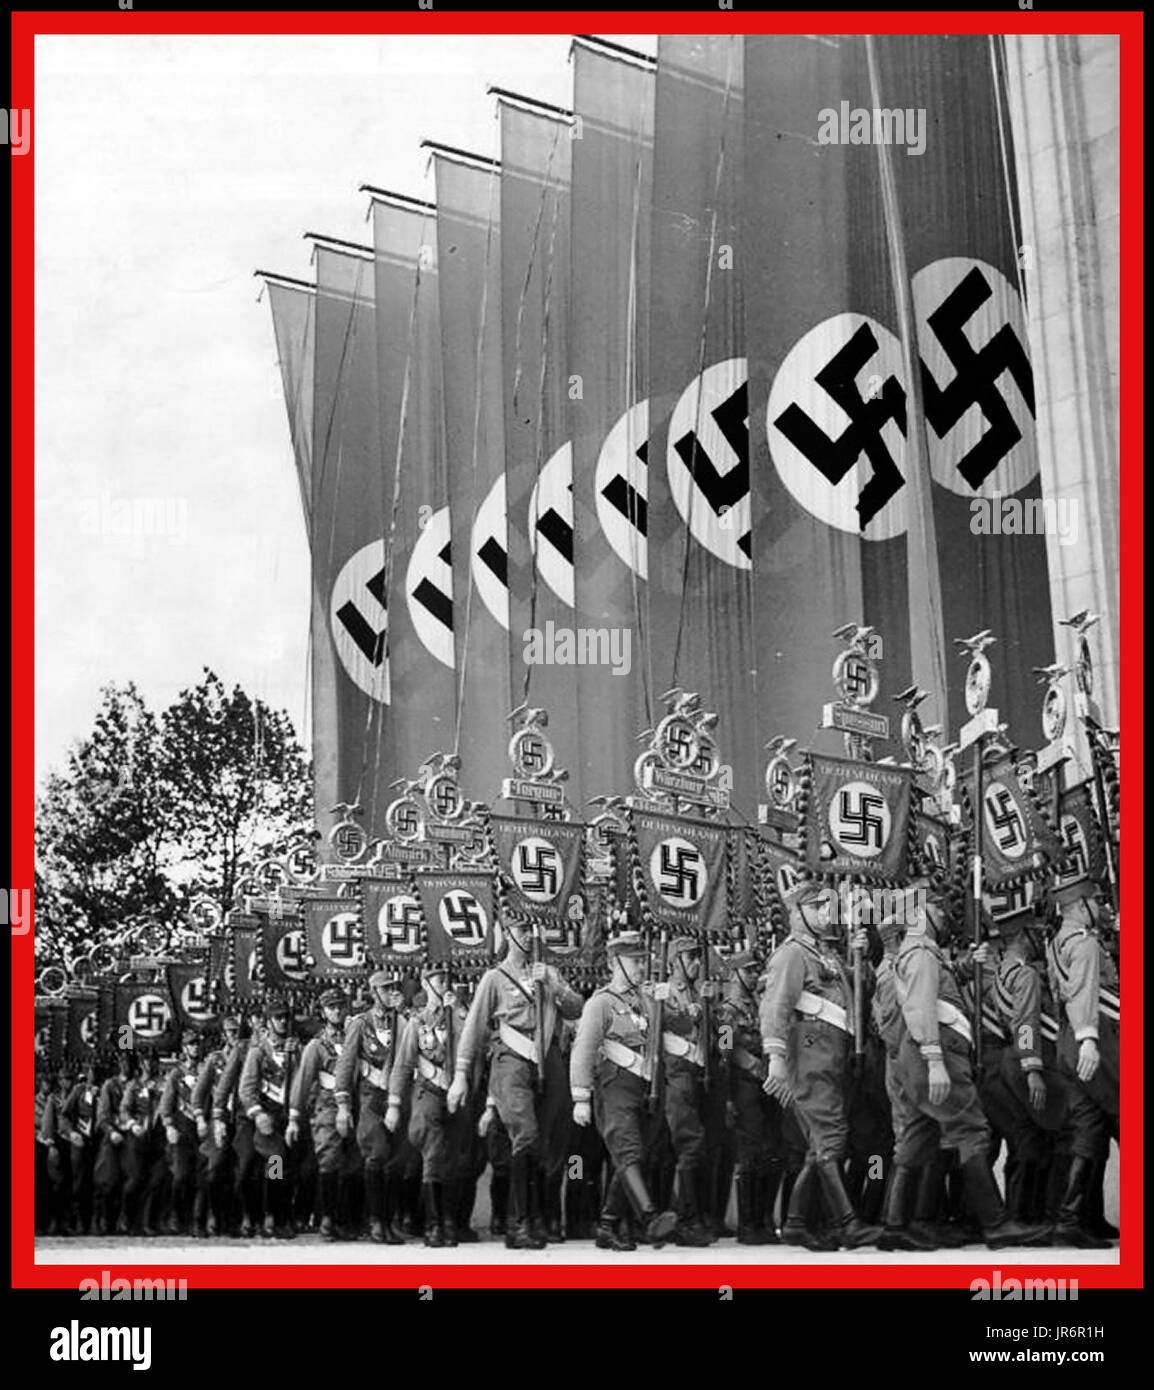 Nazi-Sturmabteilung (SA), Militärvollstrecker der Nazipartei, marschiert den Nürnberg Luitpoldhain mit großen Swastika-Bannern und regionalen Plaketten auf dem Naziparteikongress Nürnberger Rallye 1930er Jahre hinunter. Nürnberger Nazideutschland Stockfoto